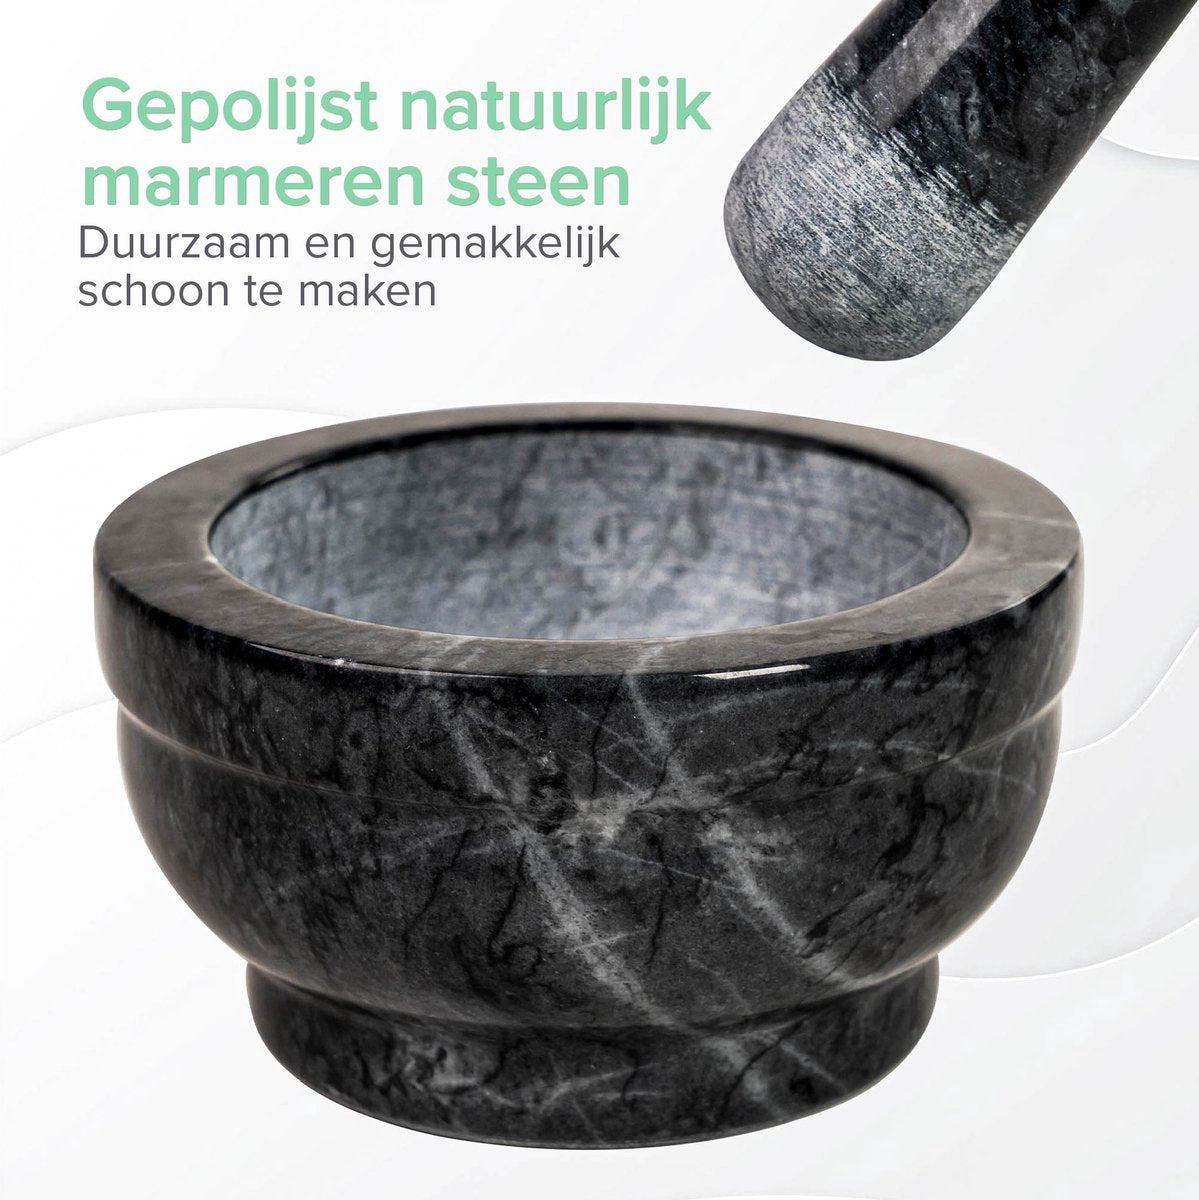 Coninx vijzel - stirbier mit Stamper - Herbstamper - Ø15 x H8cm - Schwarzer Marmor poliert